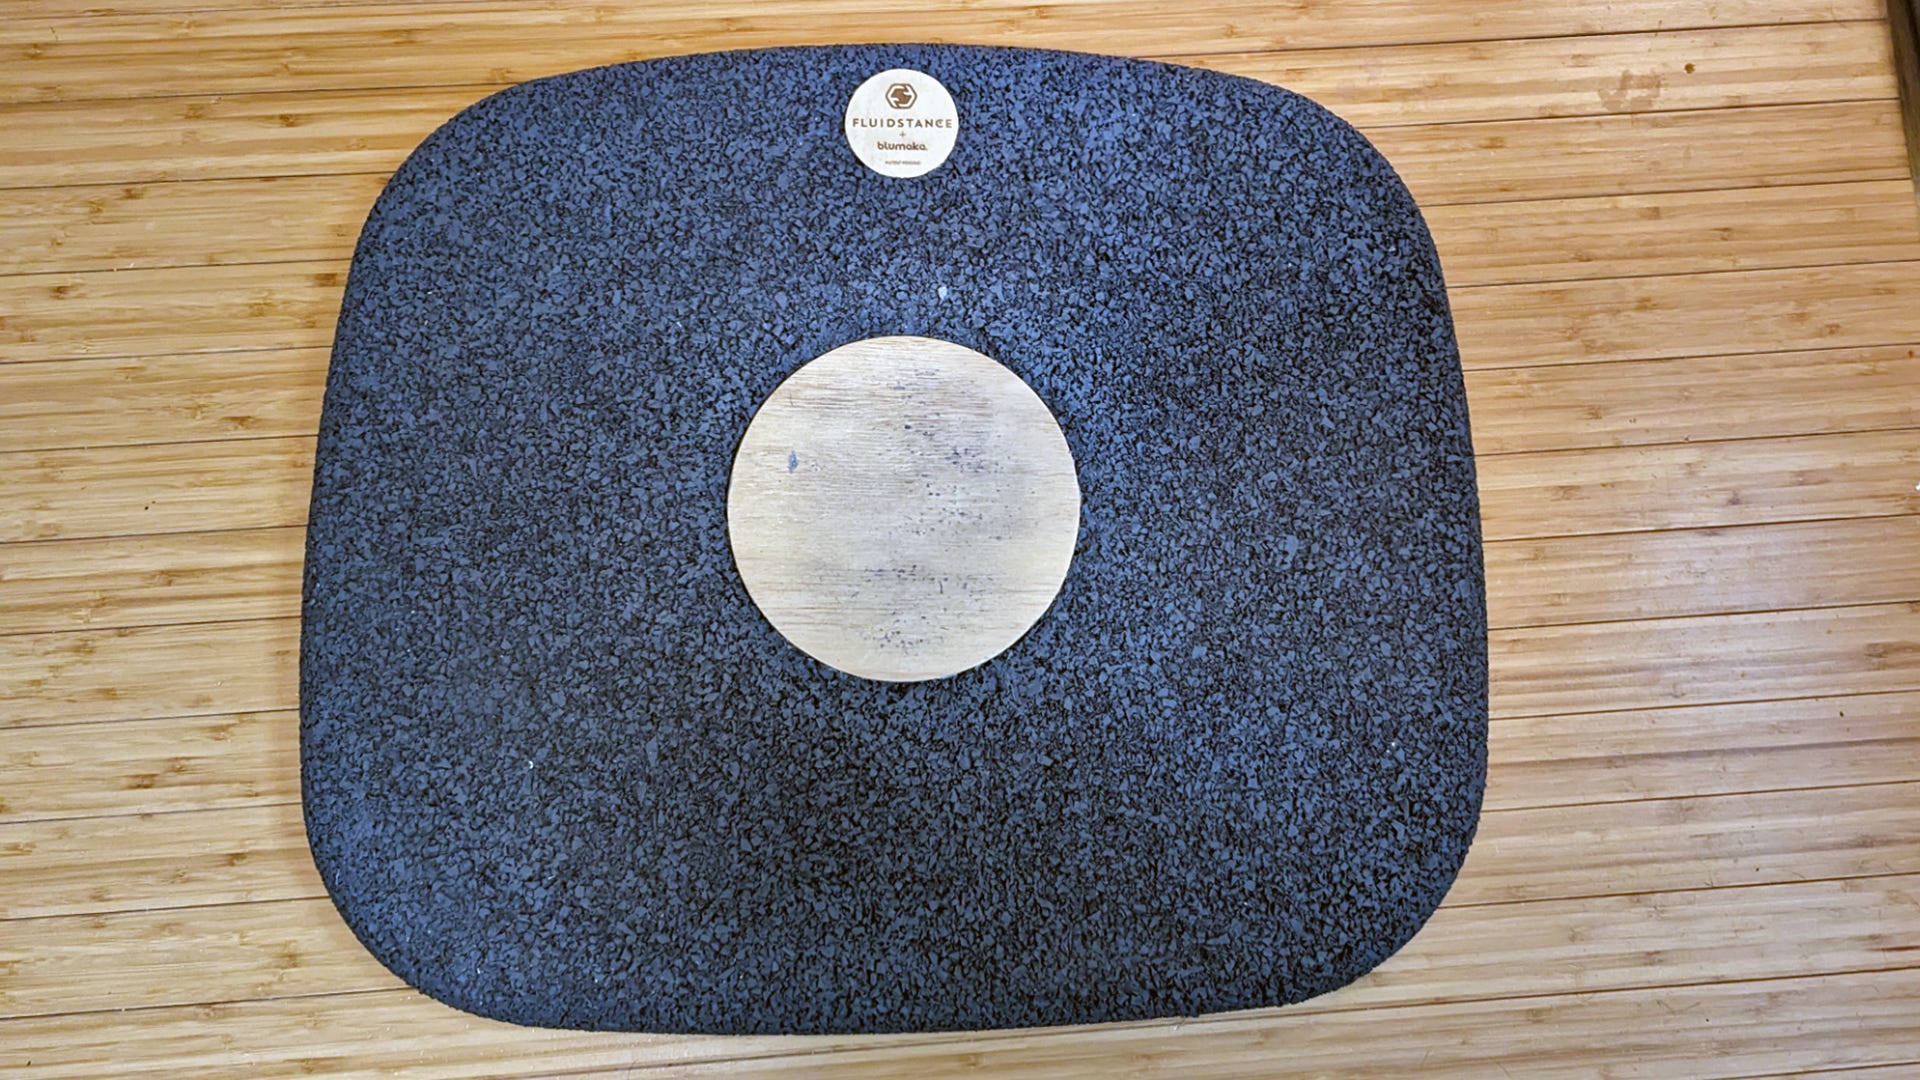 An anti-fatigue mat with a wood center